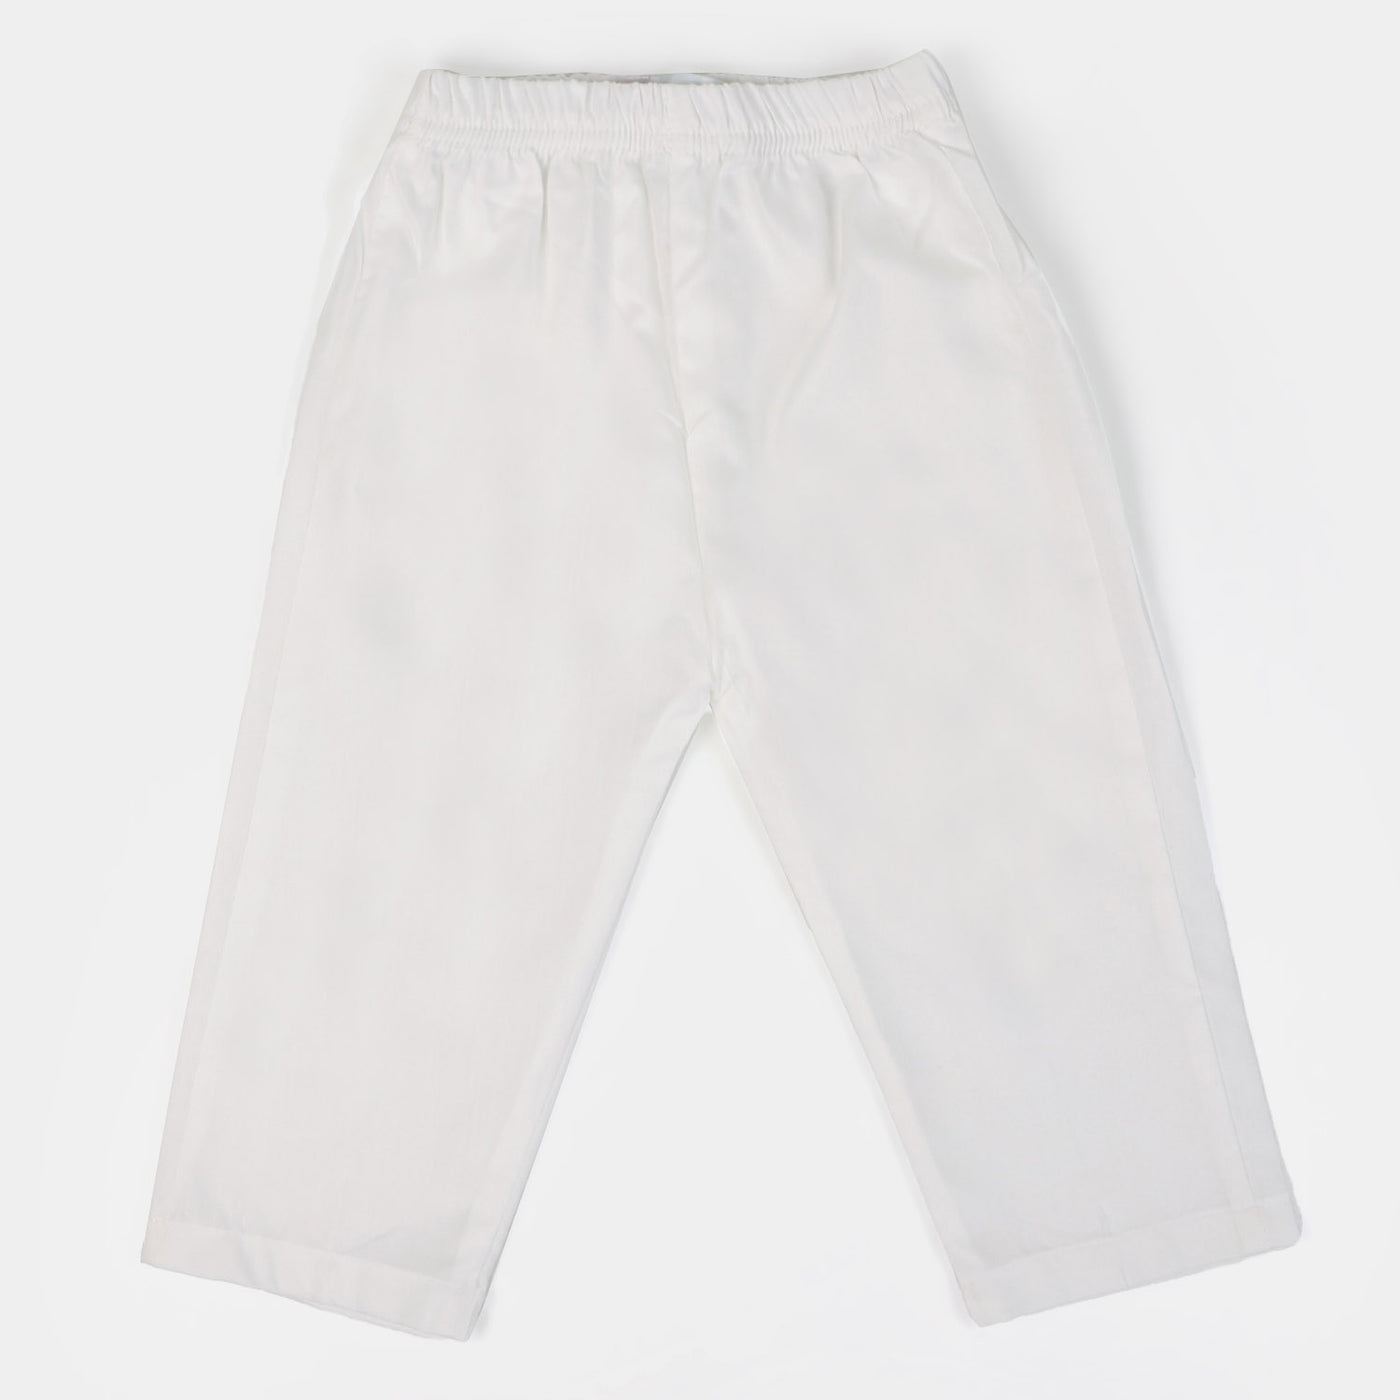 Infant Boys Eastern Basic Pajama - White